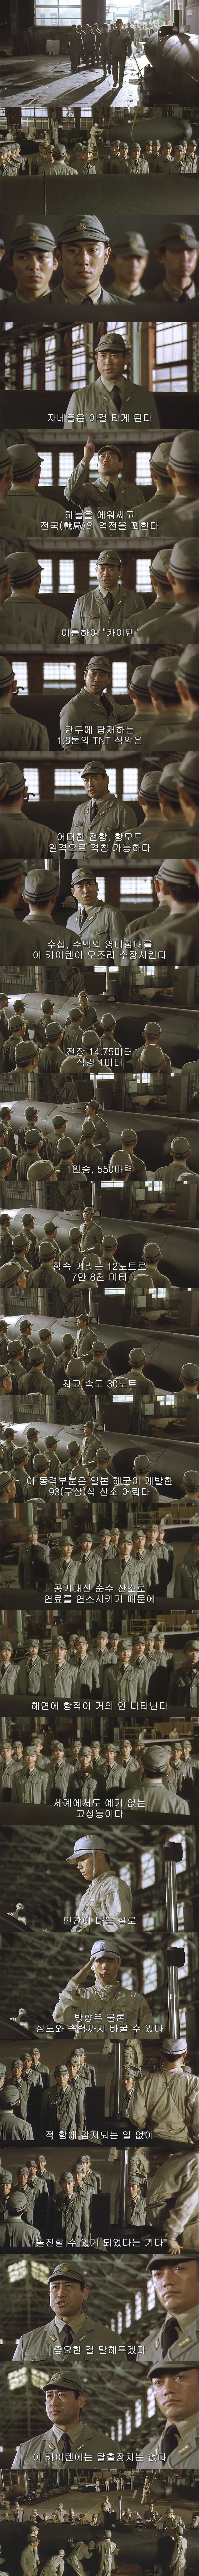 전쟁말기 일본의 인간어뢰.jpg